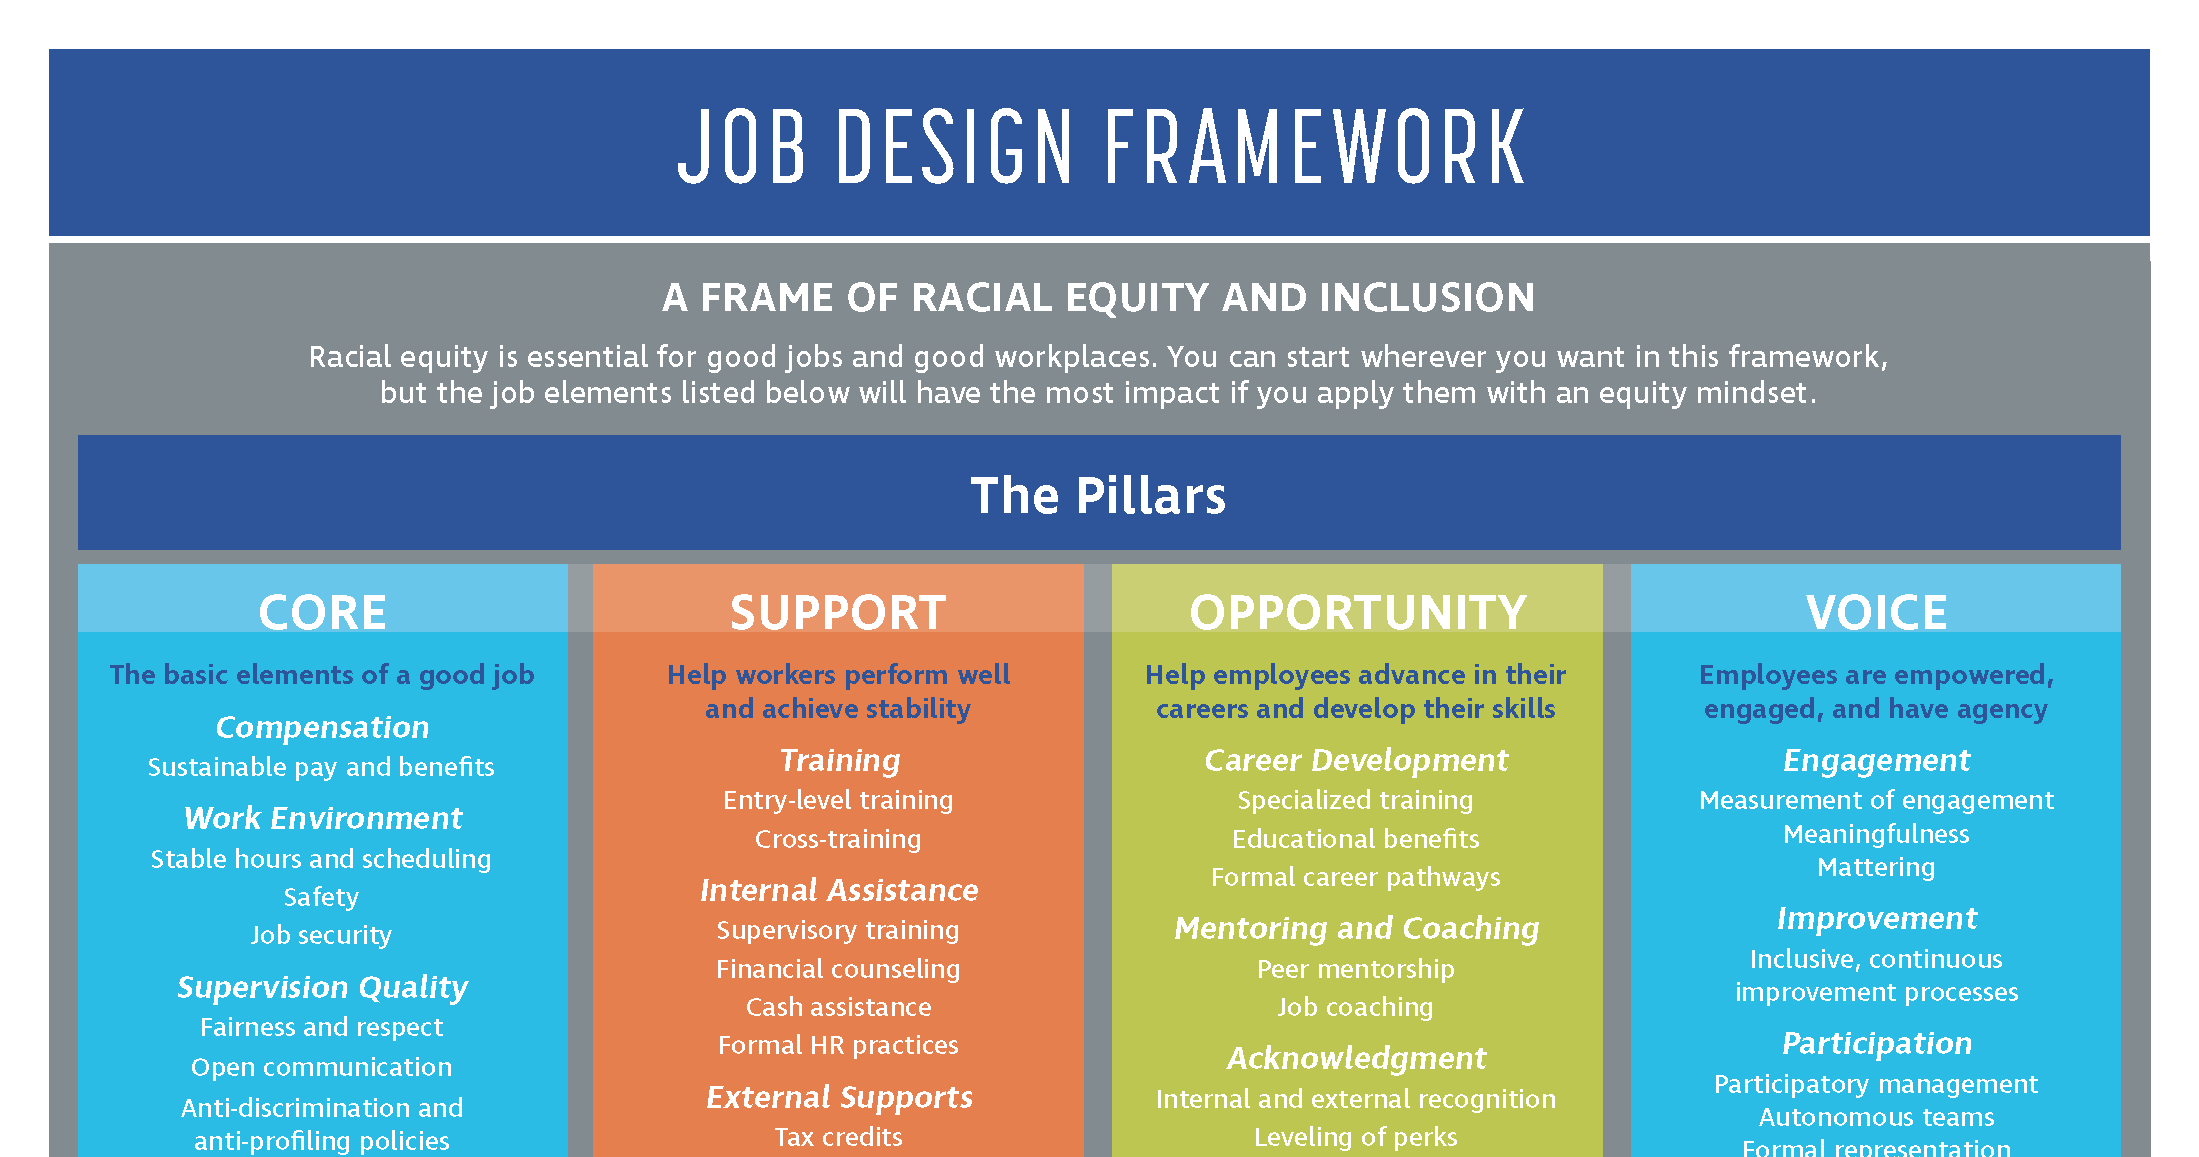 Job Design Framework | National Fund for Workforce Solutions